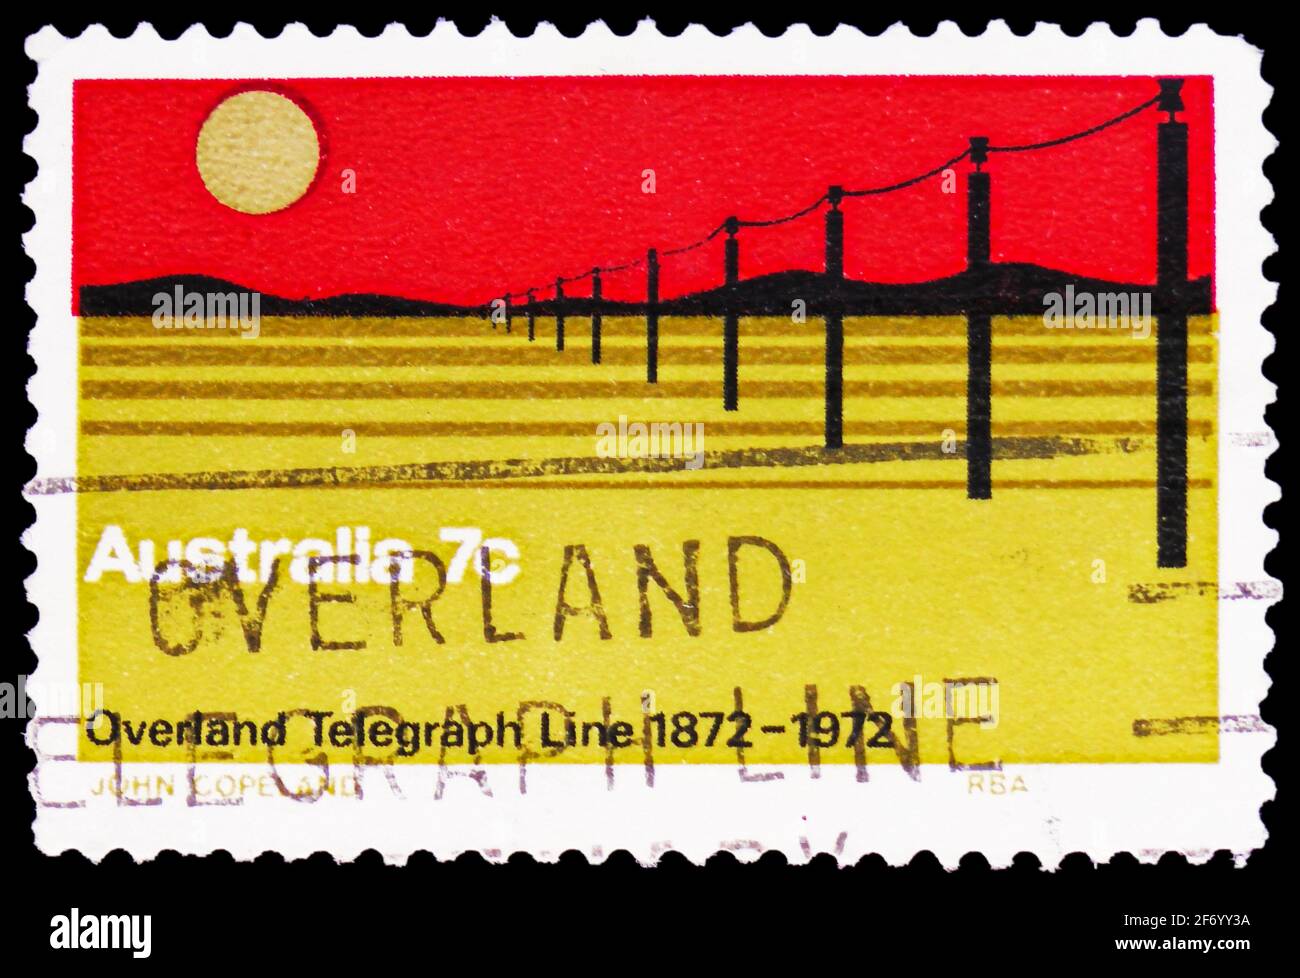 MOSKAU, RUSSLAND - 18. JANUAR 2021: Die in Australien gedruckte Briefmarke zeigt den 100. Jahrestag der Overland Telegraph Line, um 1972 Stockfoto